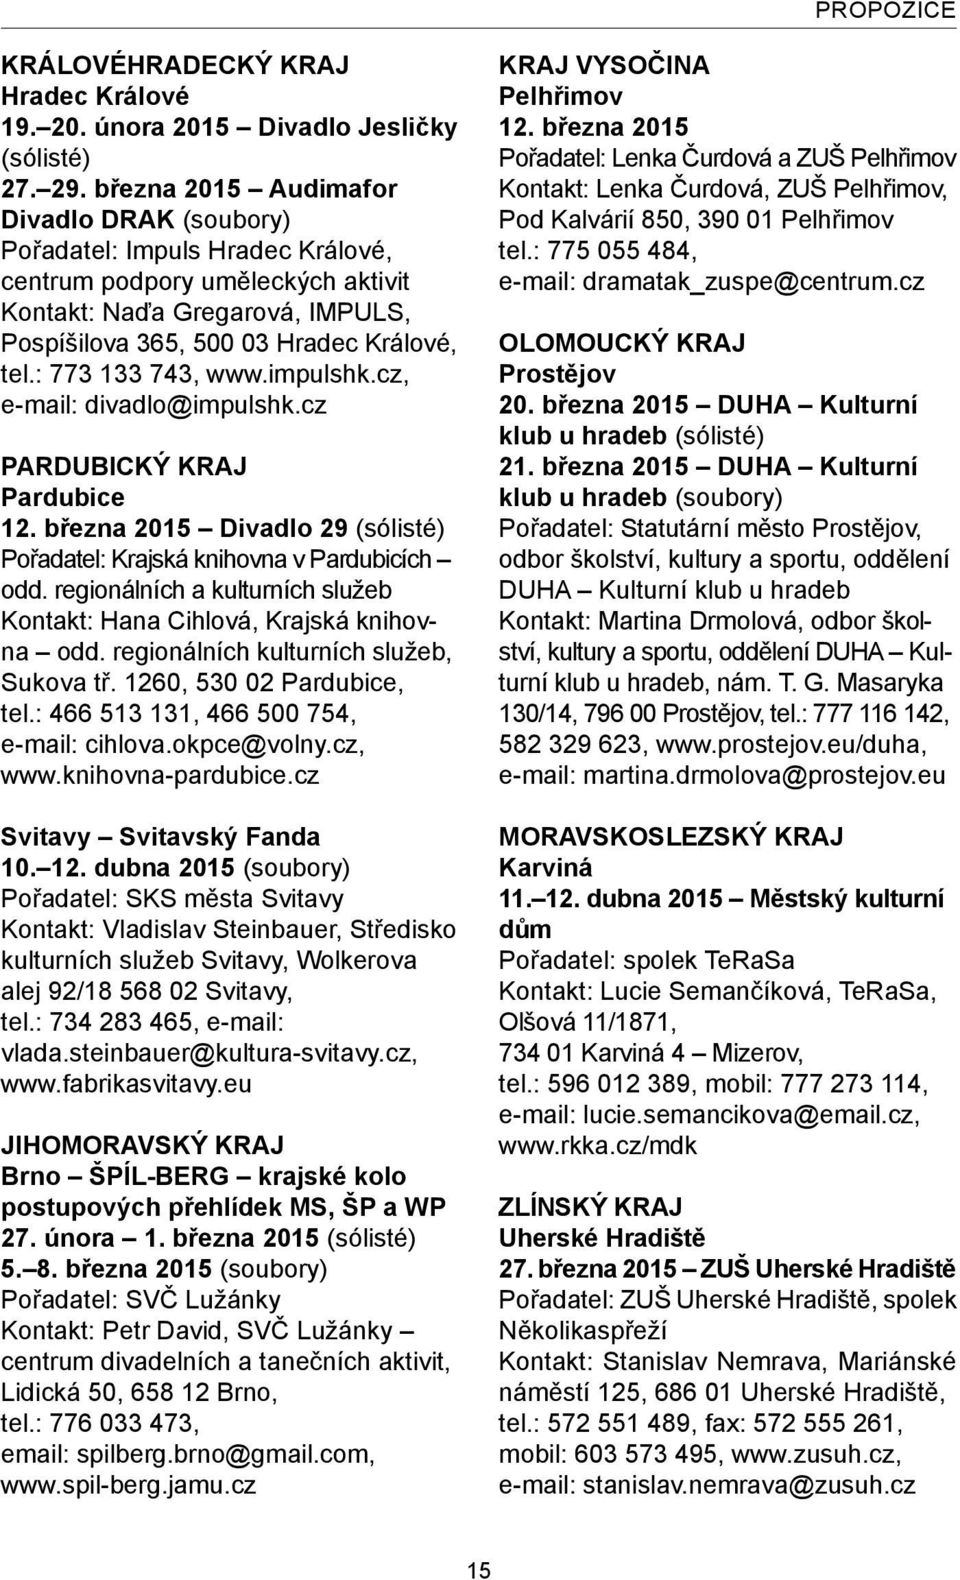 : 773 133 743, www.impulshk.cz, e-mail: divadlo@impulshk.cz PARDUBICKÝ KRAJ Pardubice 12. března 2015 Divadlo 29 (sólisté) Pořadatel: Krajská knihovna v Pardubicích odd.